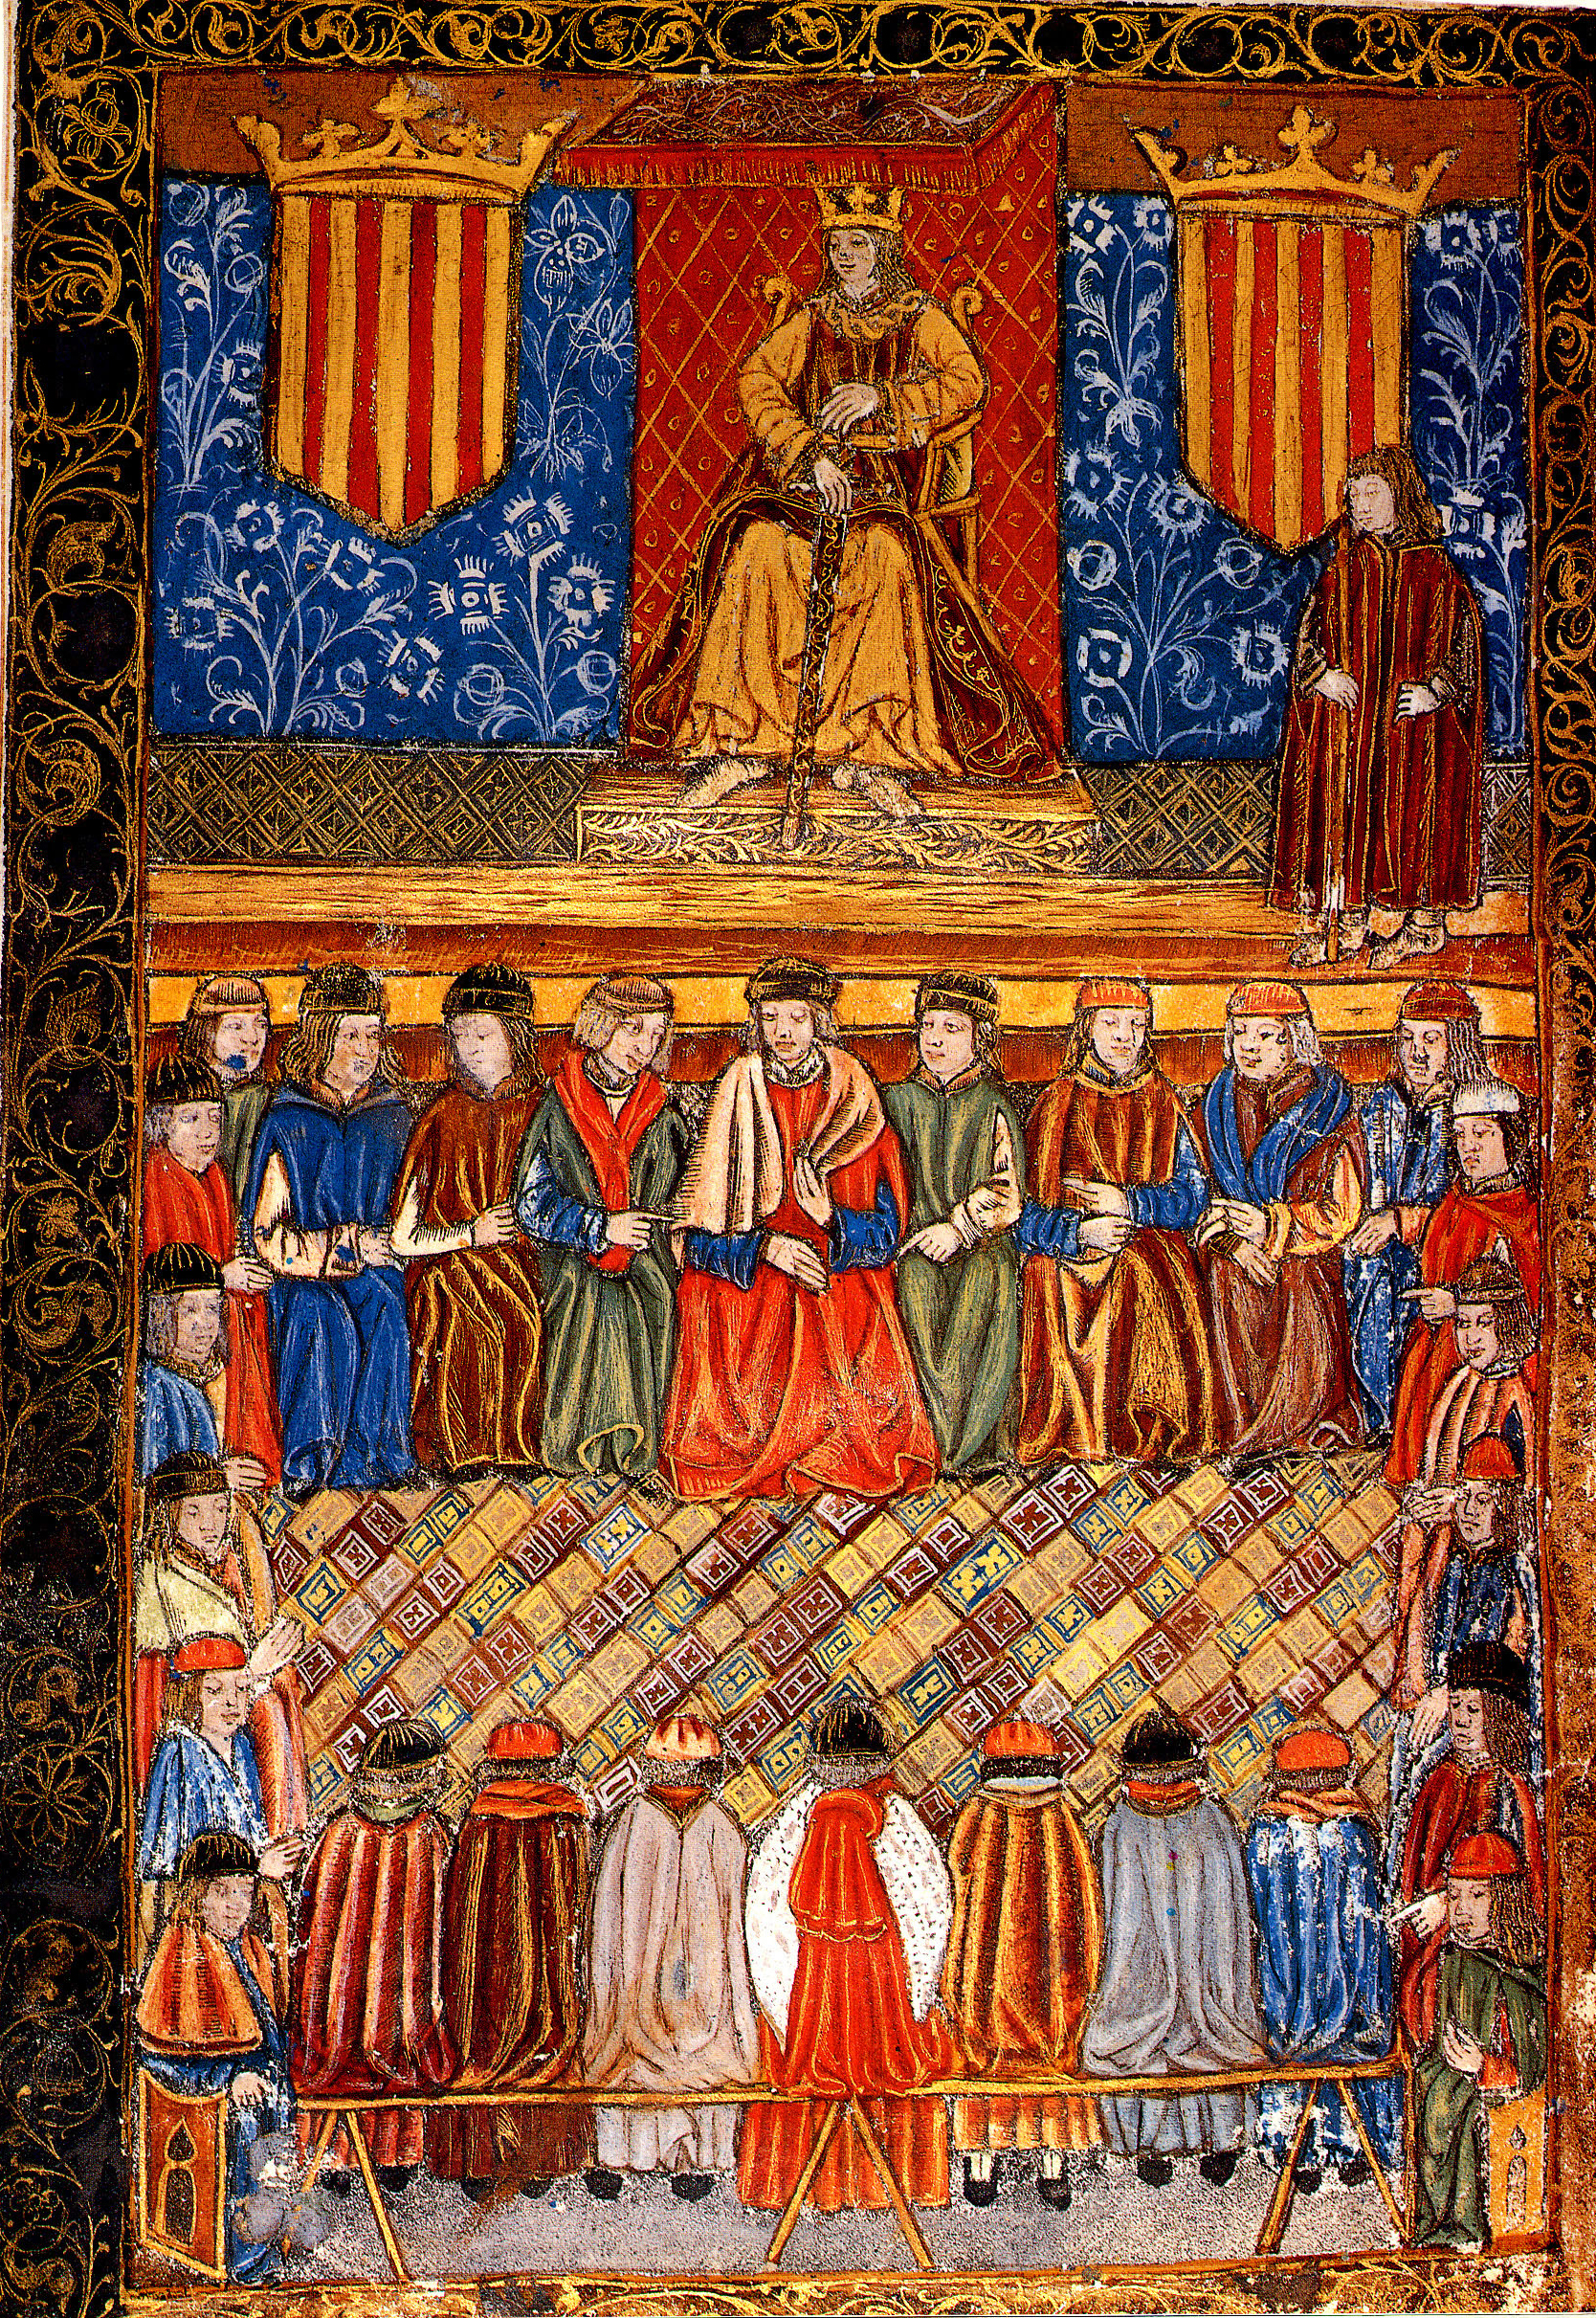 Imatge extreta de 'Constitucions de Catalunya. L’incunable de 1495', Barcelona, Generalitat de Catalunya, Departament de Justícia, 1988.